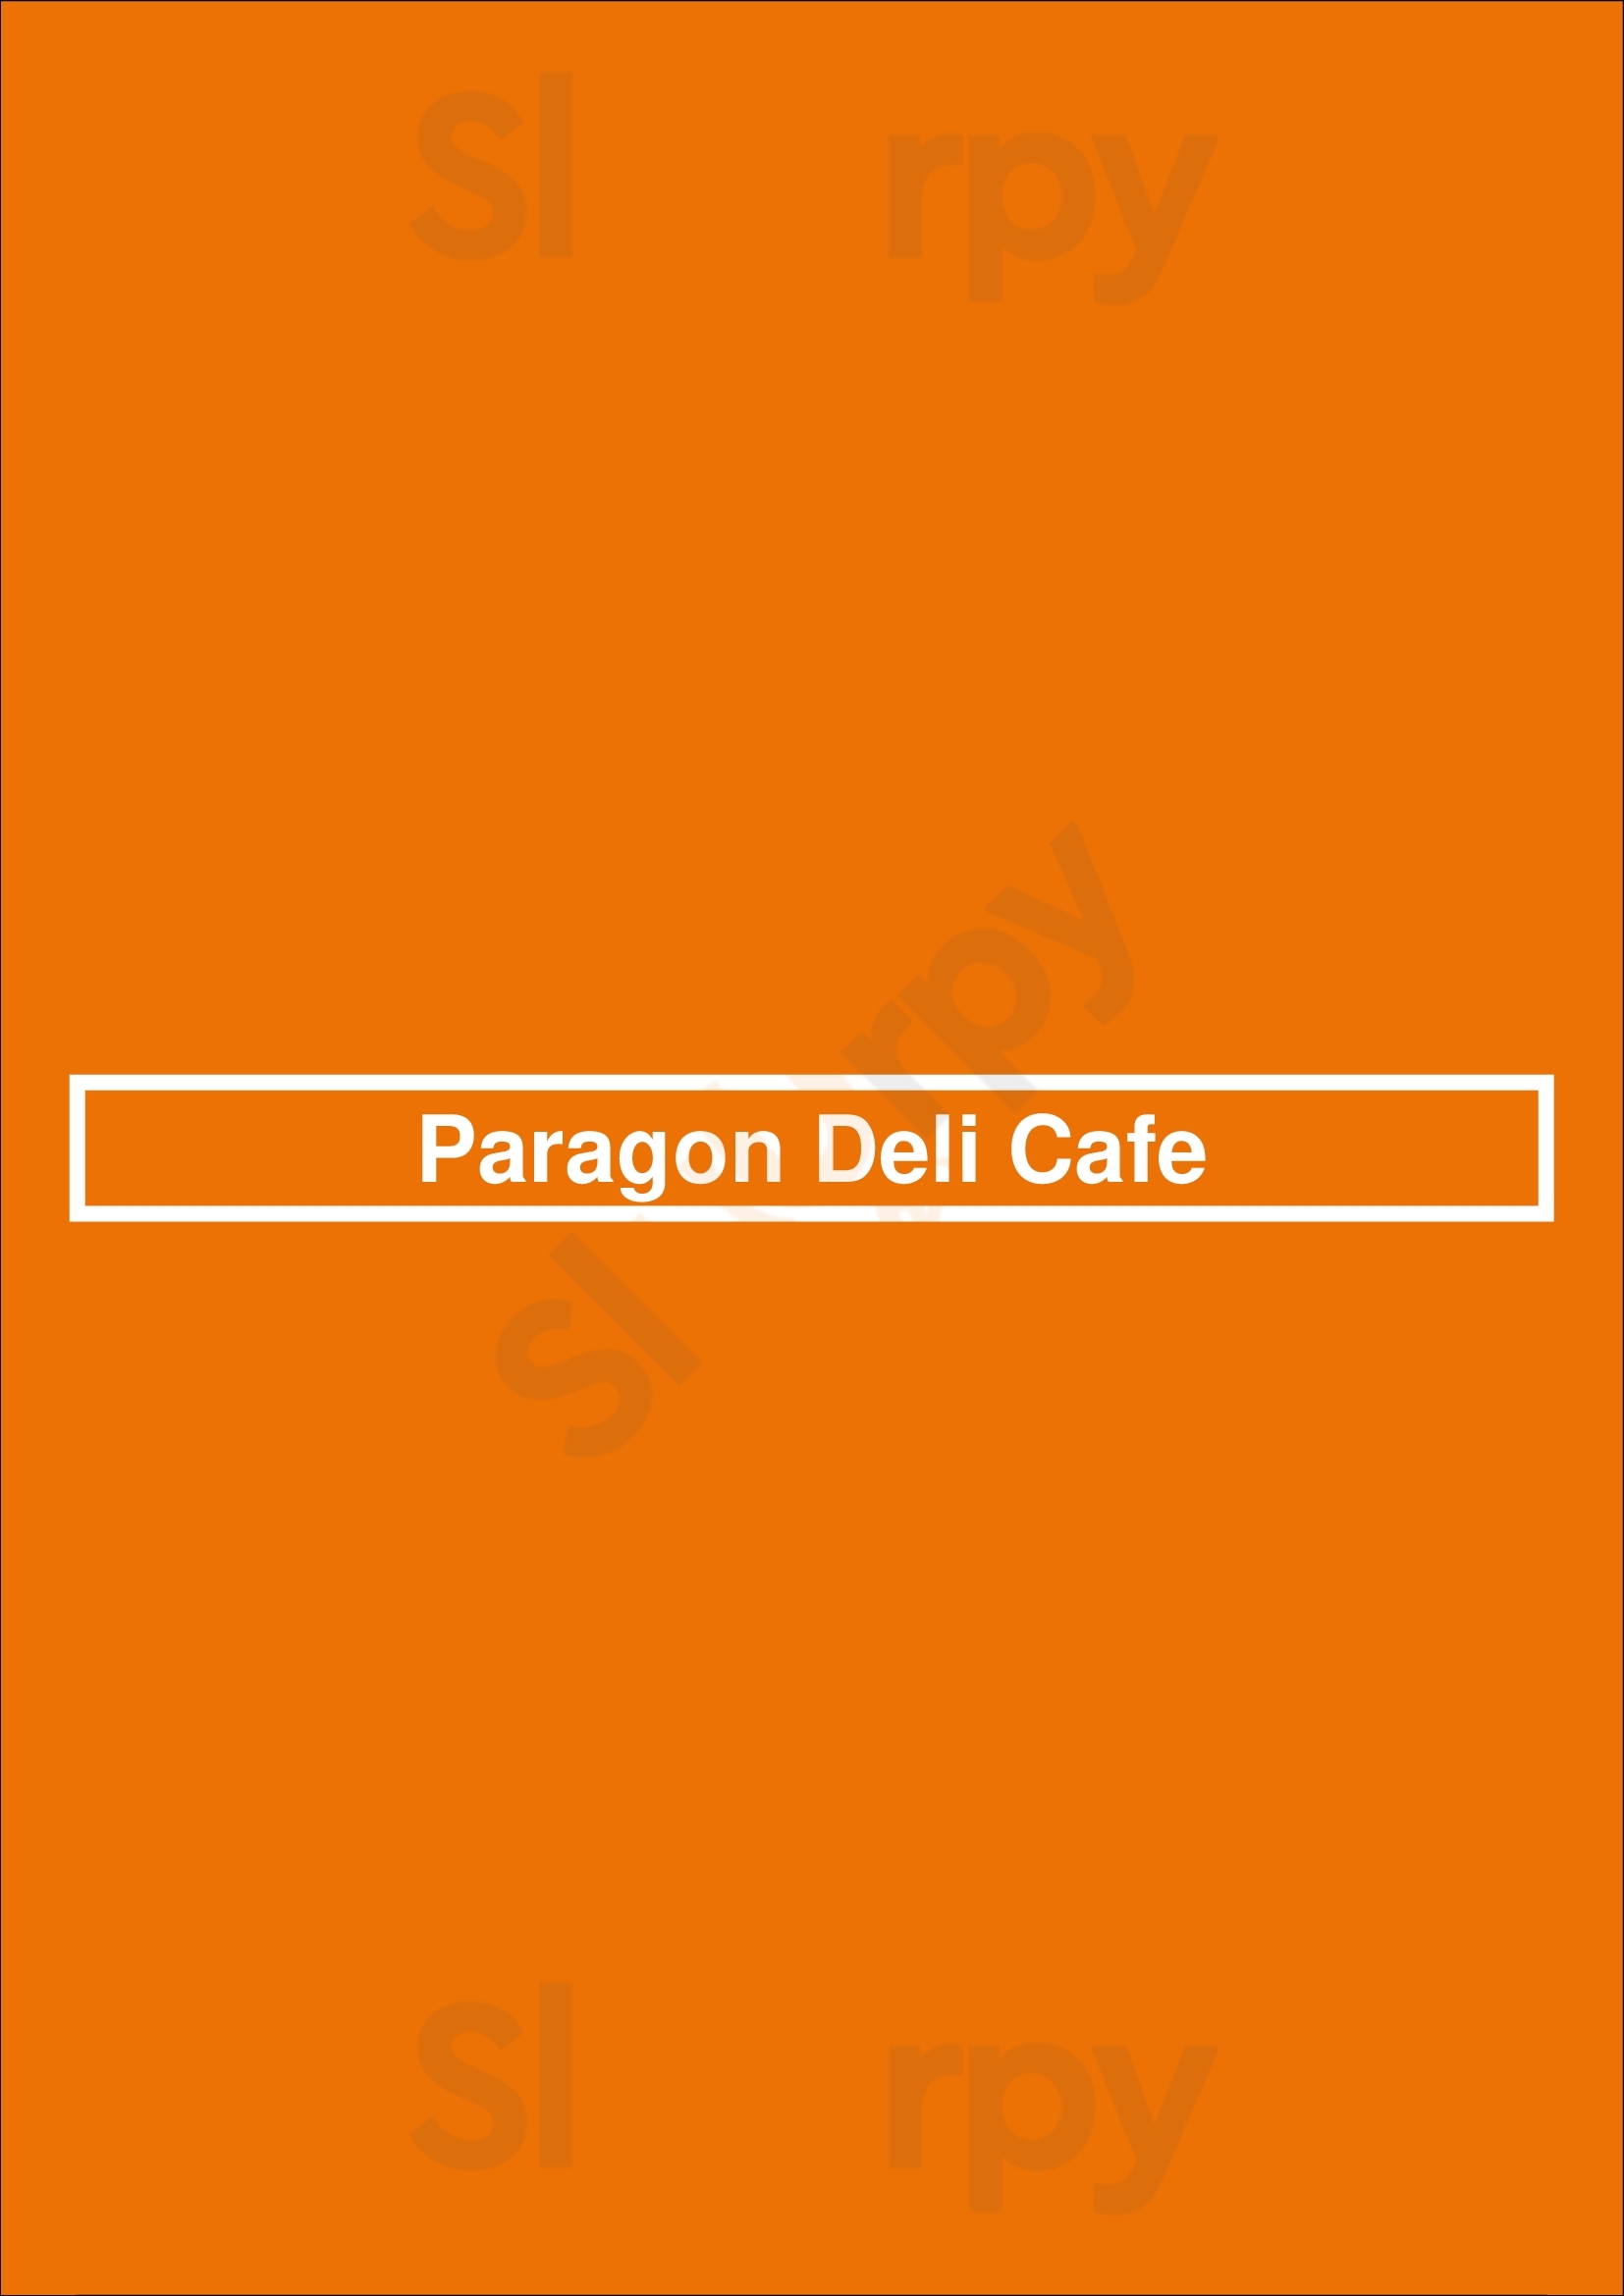 Paragon Deli Cafe San Diego Menu - 1